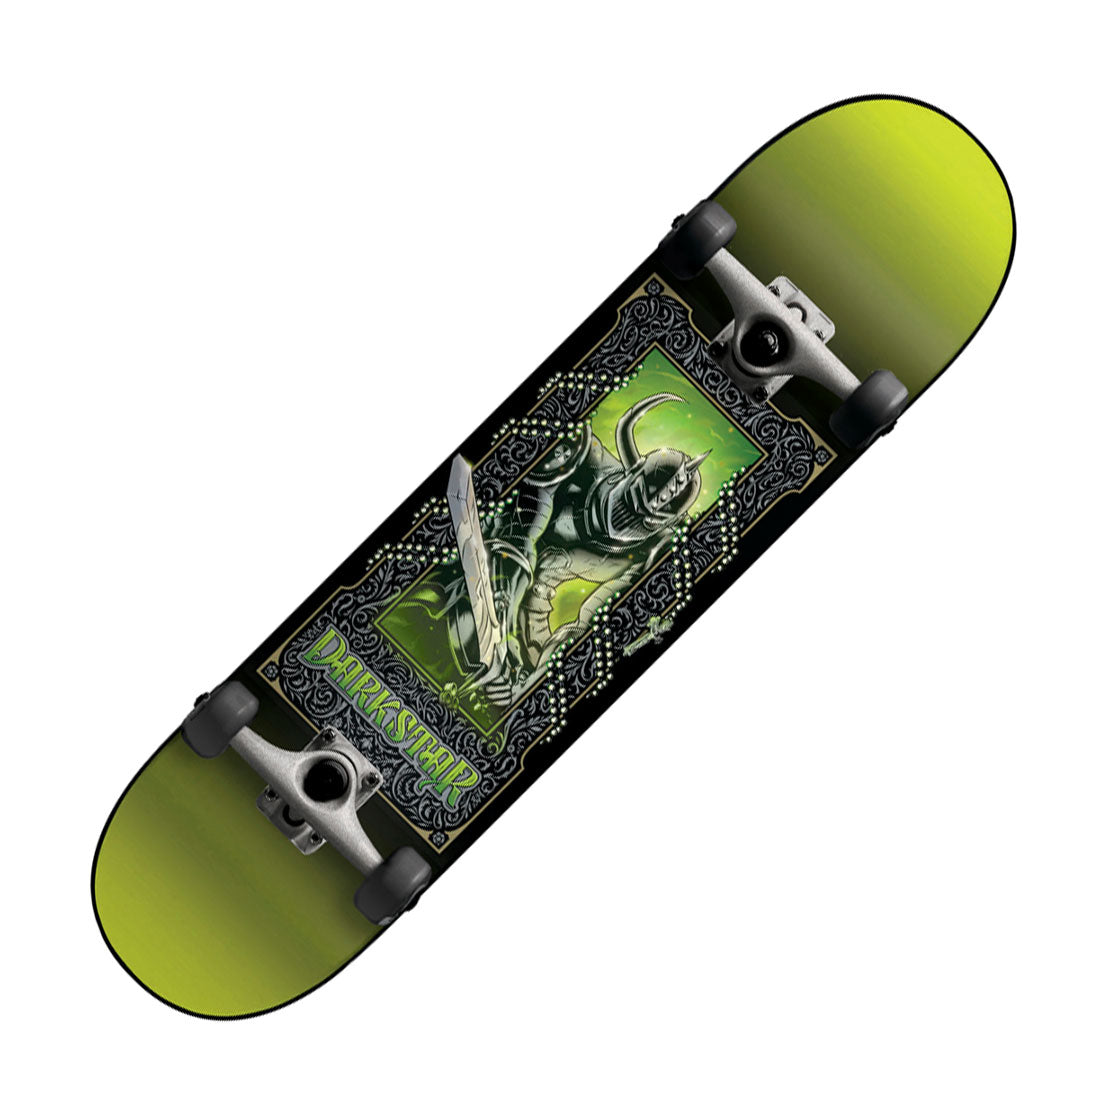 Darkstar Anthology Sword FP 7.5 Complete - Lime Skateboard Completes Modern Street